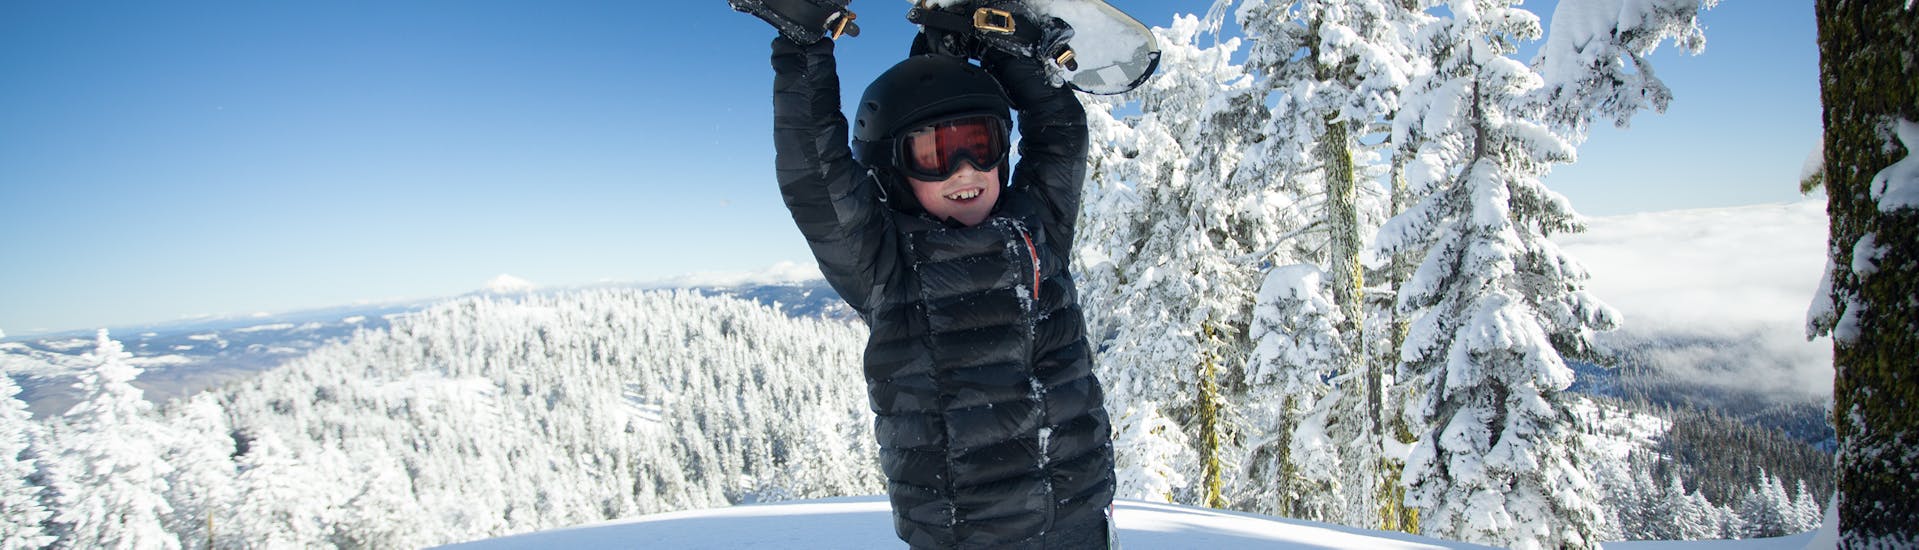 Ein Snowboarder hebt sein Board in die Luft beim Snowboardkurs für Kinder (ab 7 J.) & Erwachsene aller Levels mit der Schneesportschule ON SNOW Feldberg.